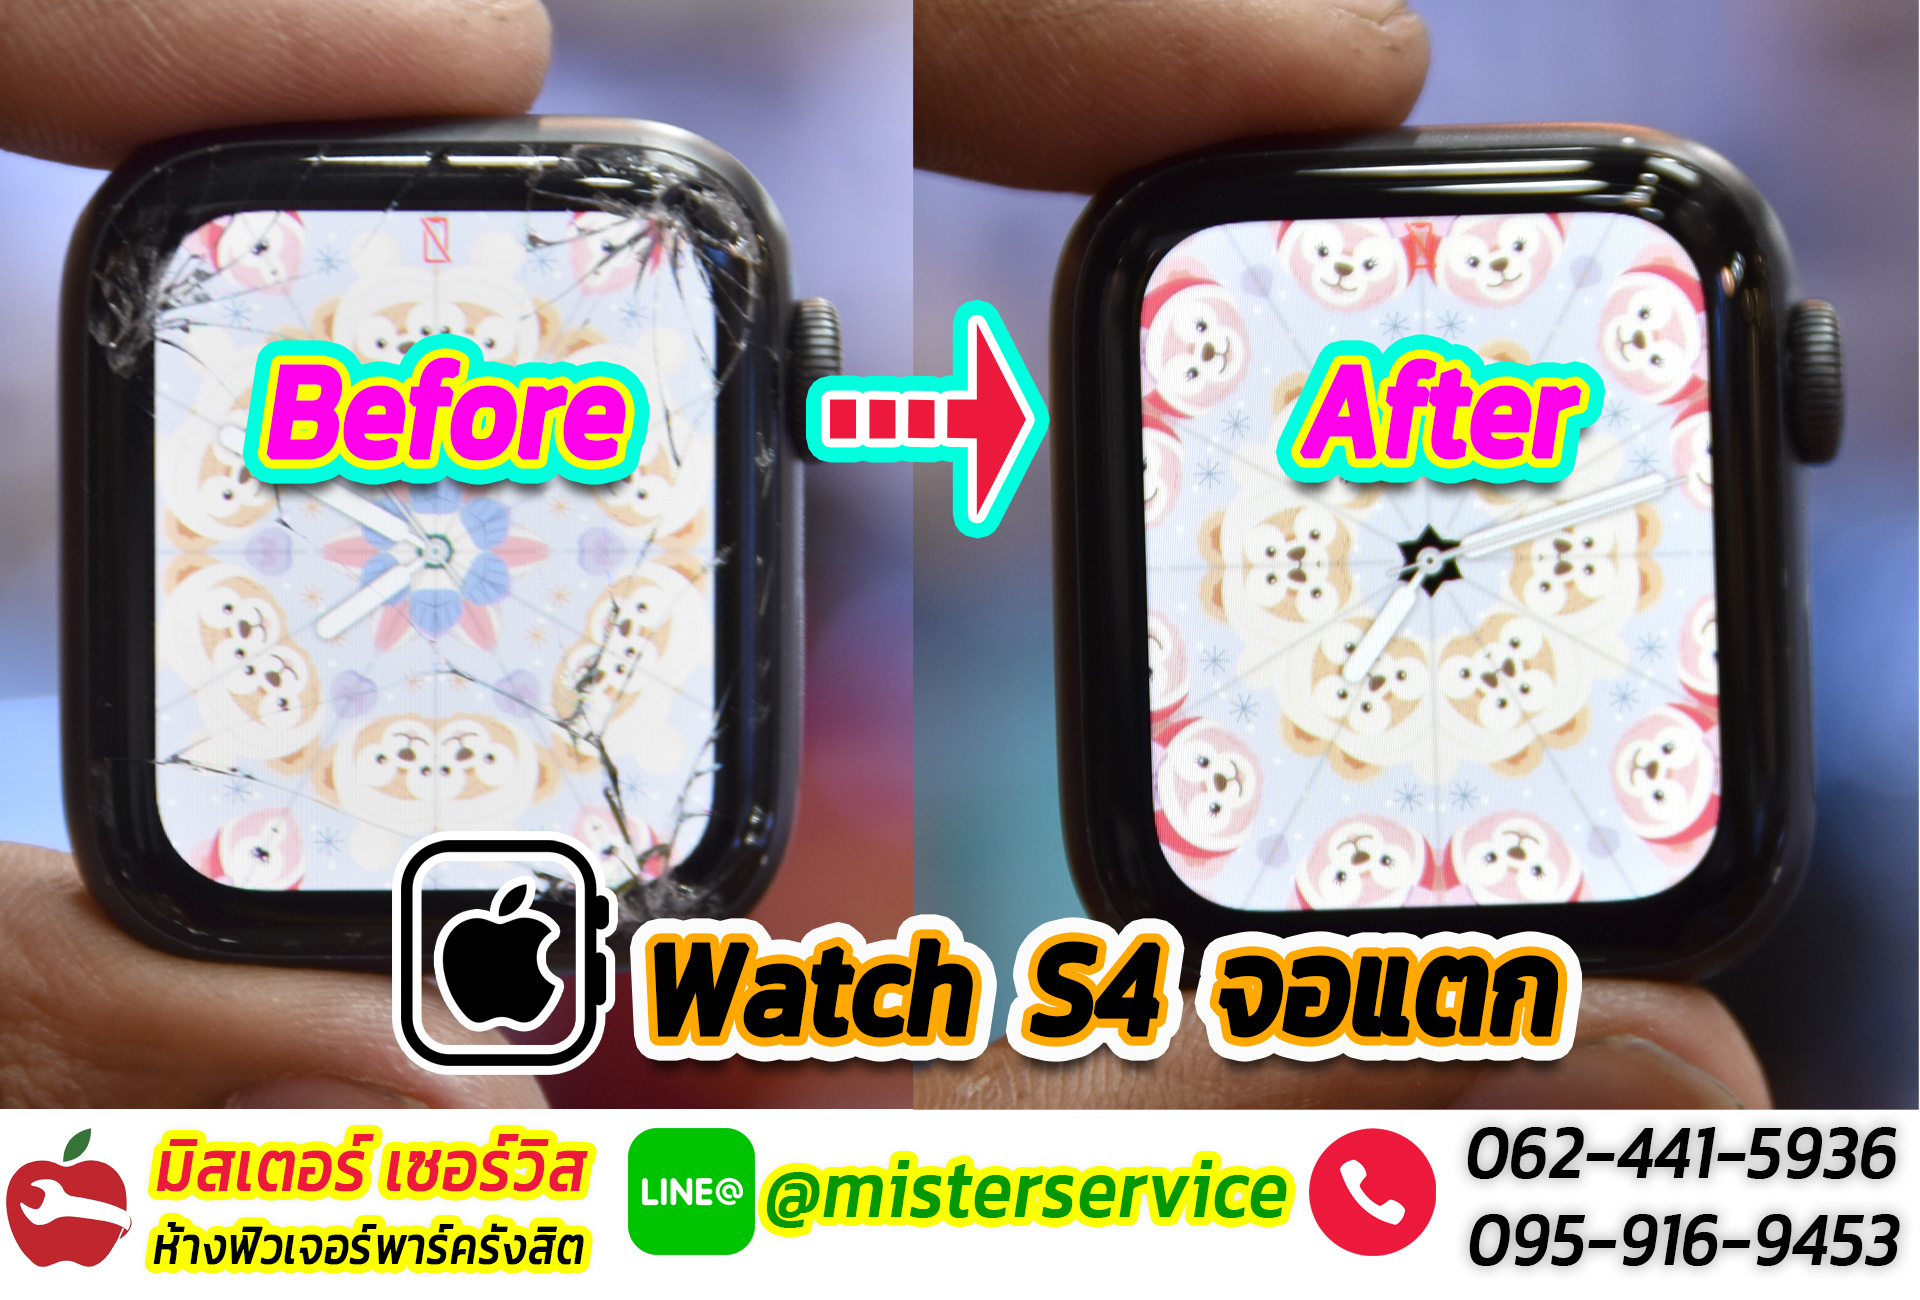 ซ่อม Apple Watch สงขลา